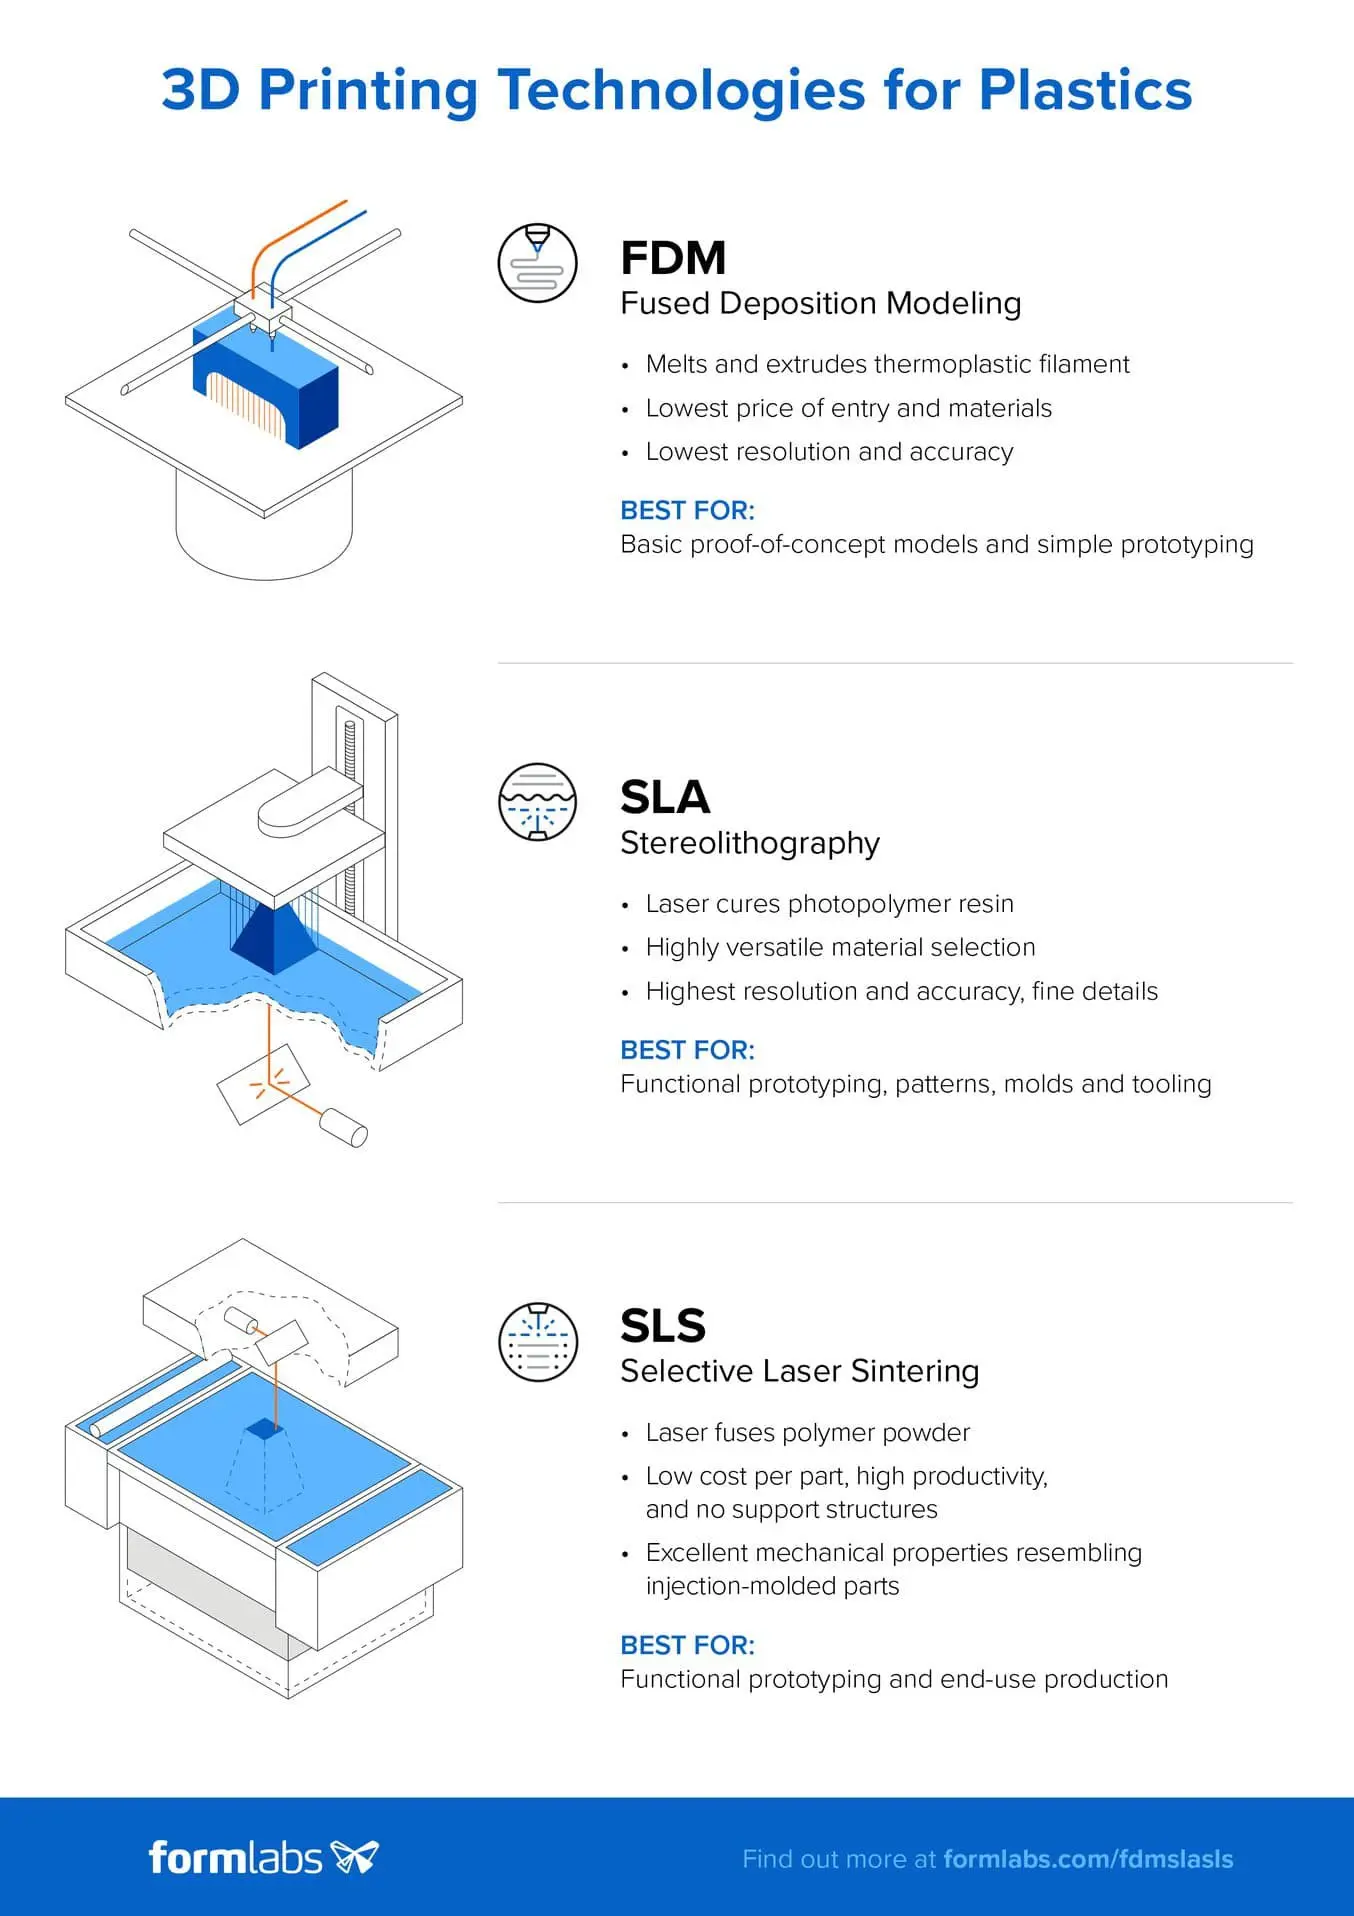 Téléchargez ici une version haute résolution de cette infographie. Vous souhaitez en savoir plus sur les technologies d'impression 3D FDM, SLA et SLS ? Consultez notre guide détaillé.